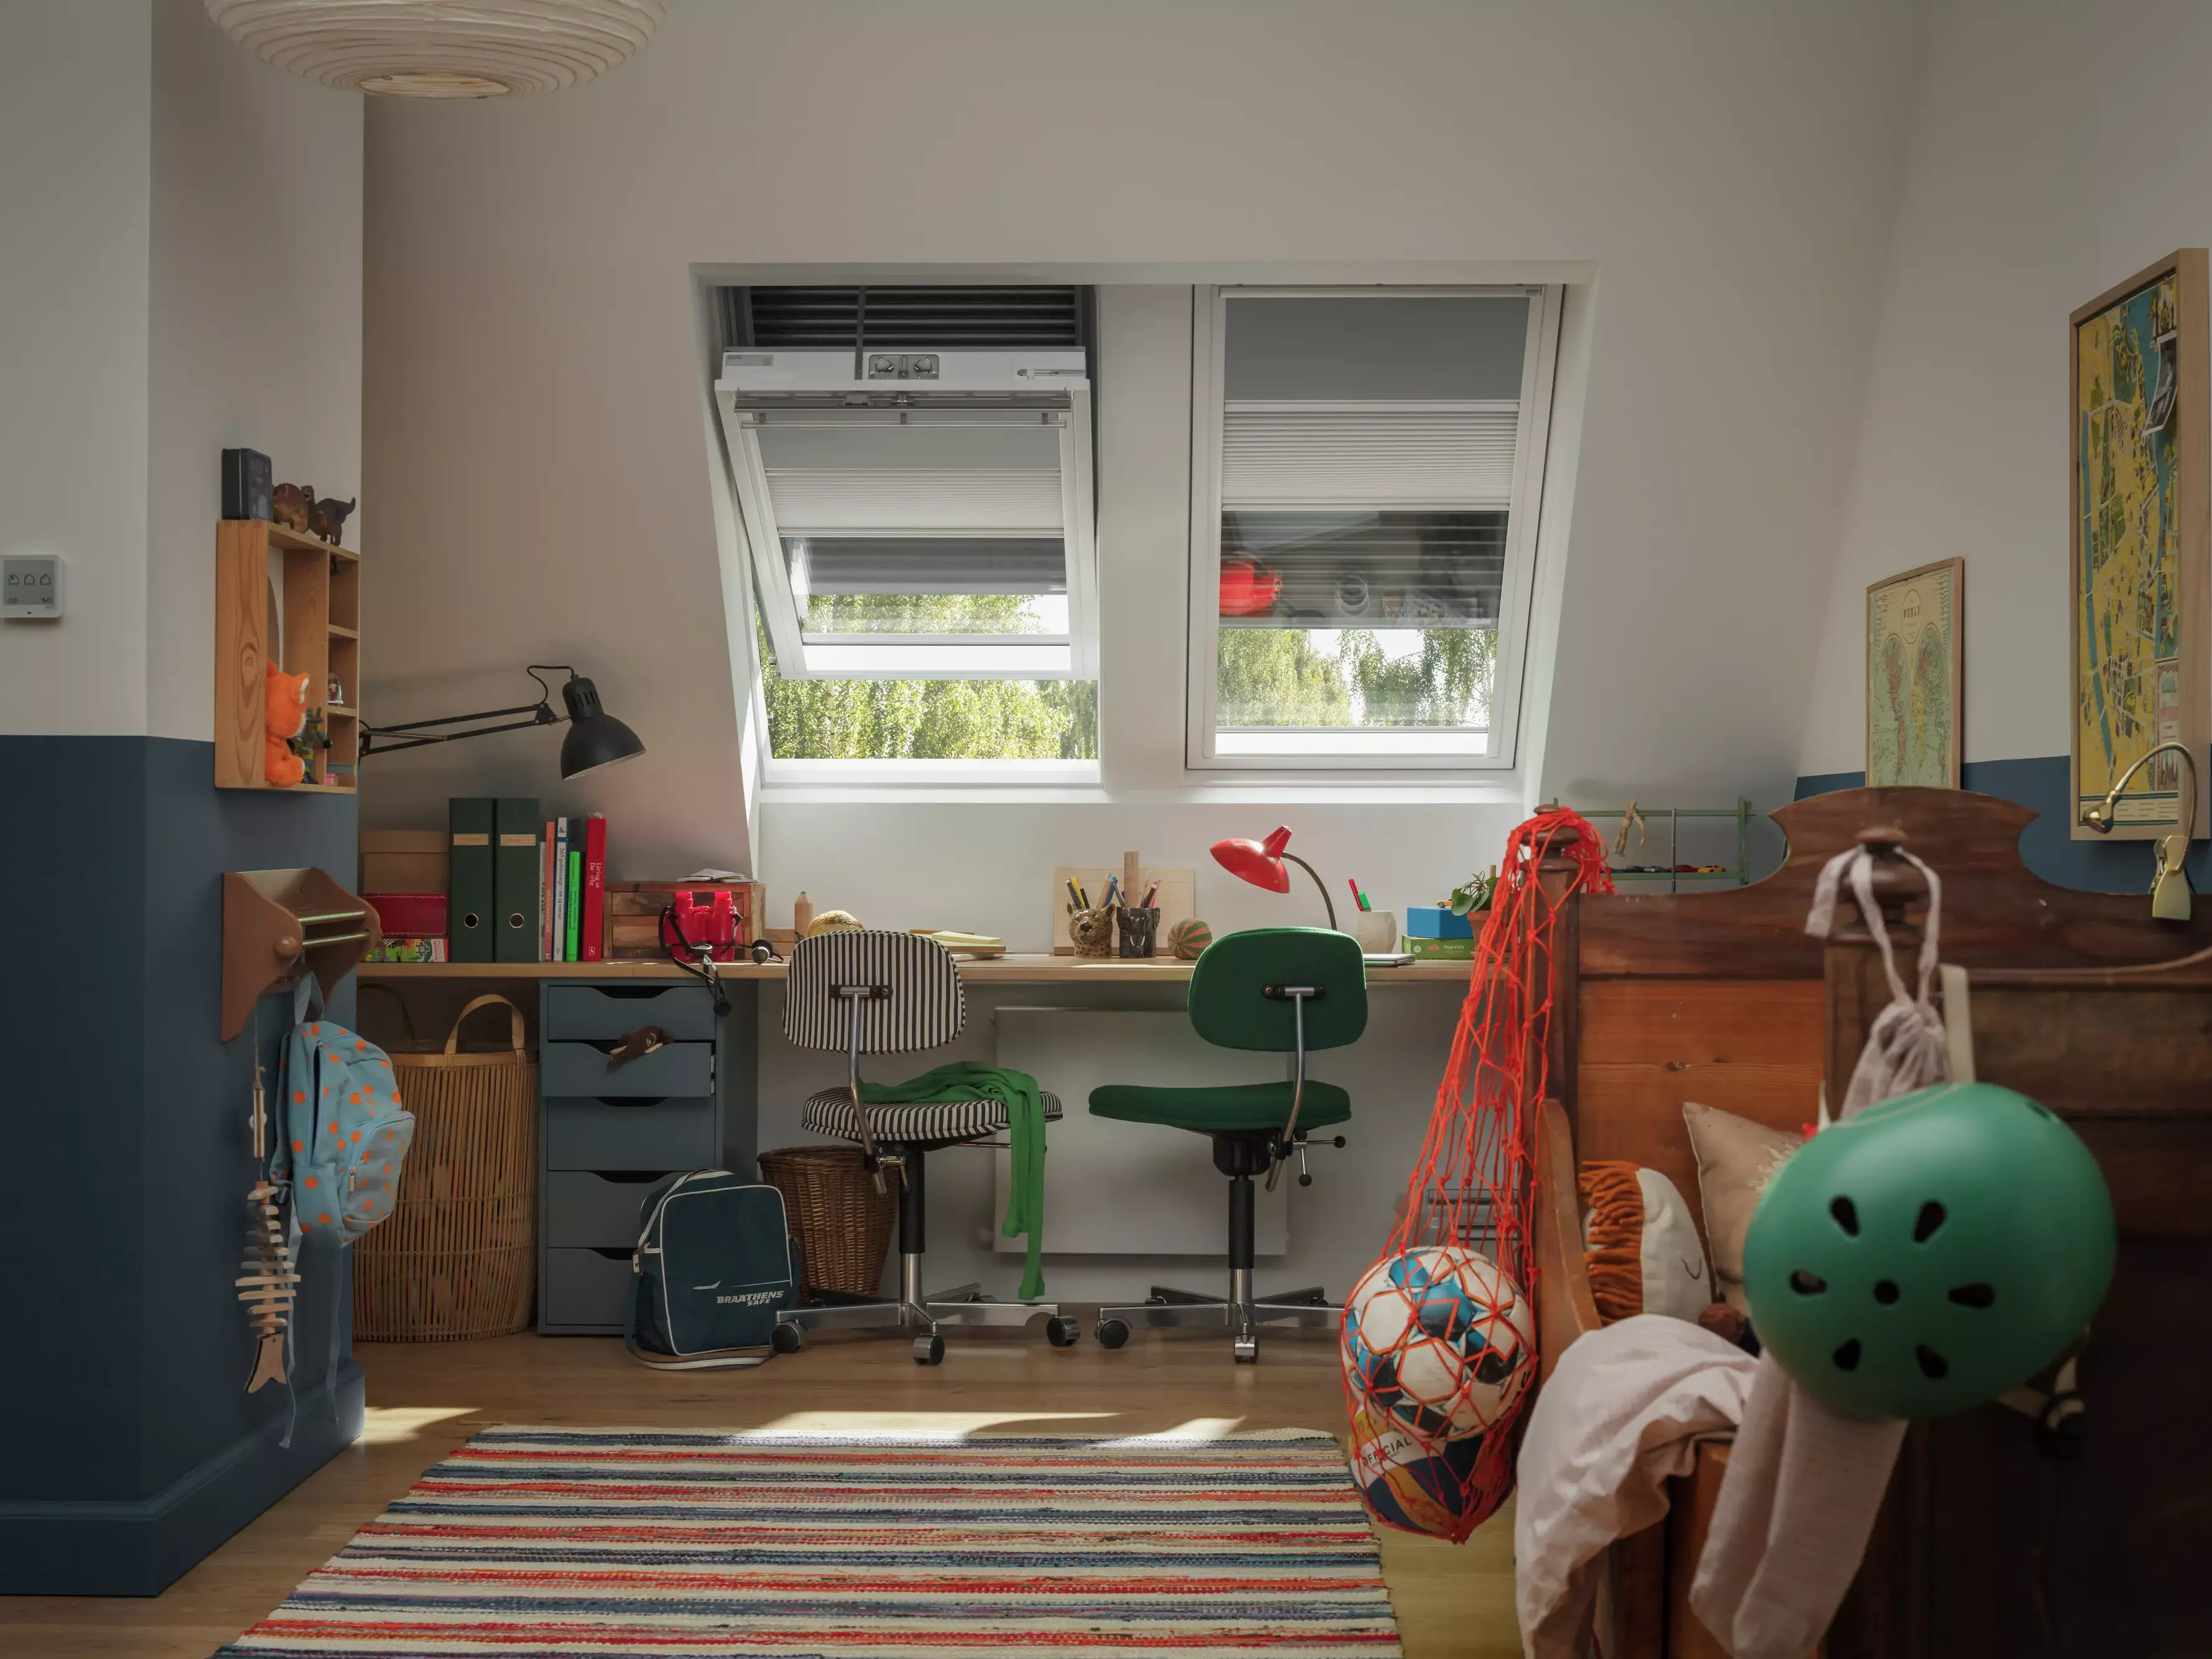 Chambre d'adolescent avec bureau d'étude, fenêtre VELUX et décoration colorée.